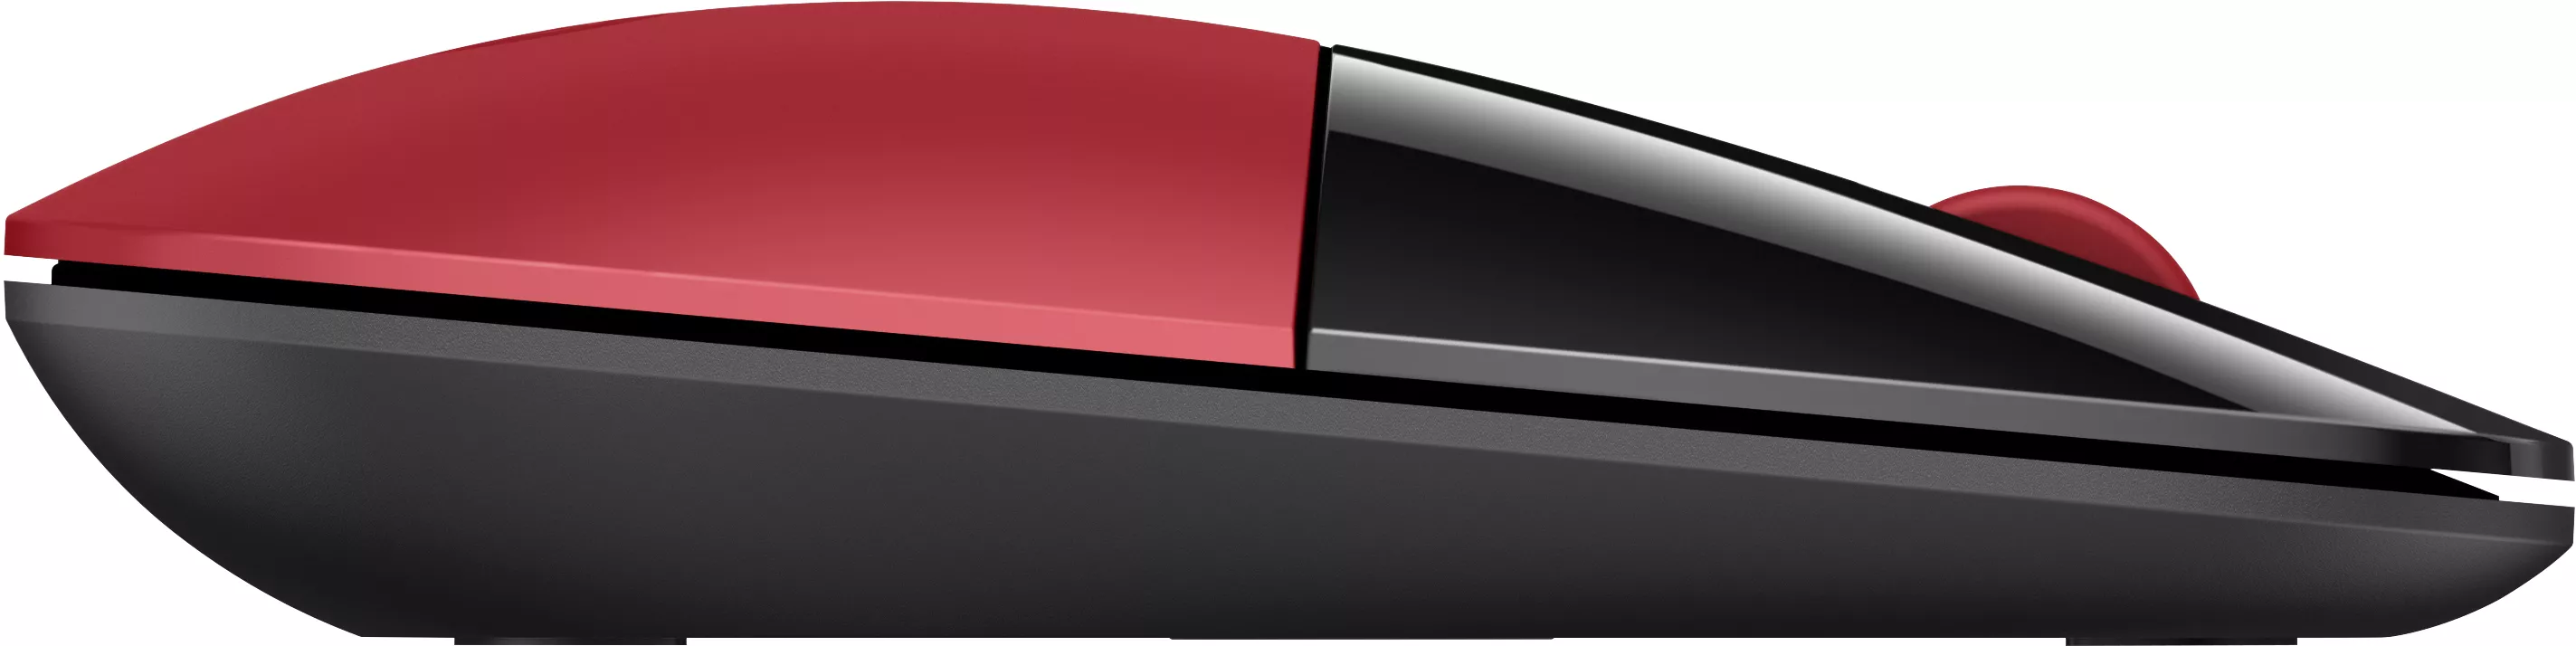 Vente HP Z3700 Wireless Mouse Cardinal Red HP au meilleur prix - visuel 8